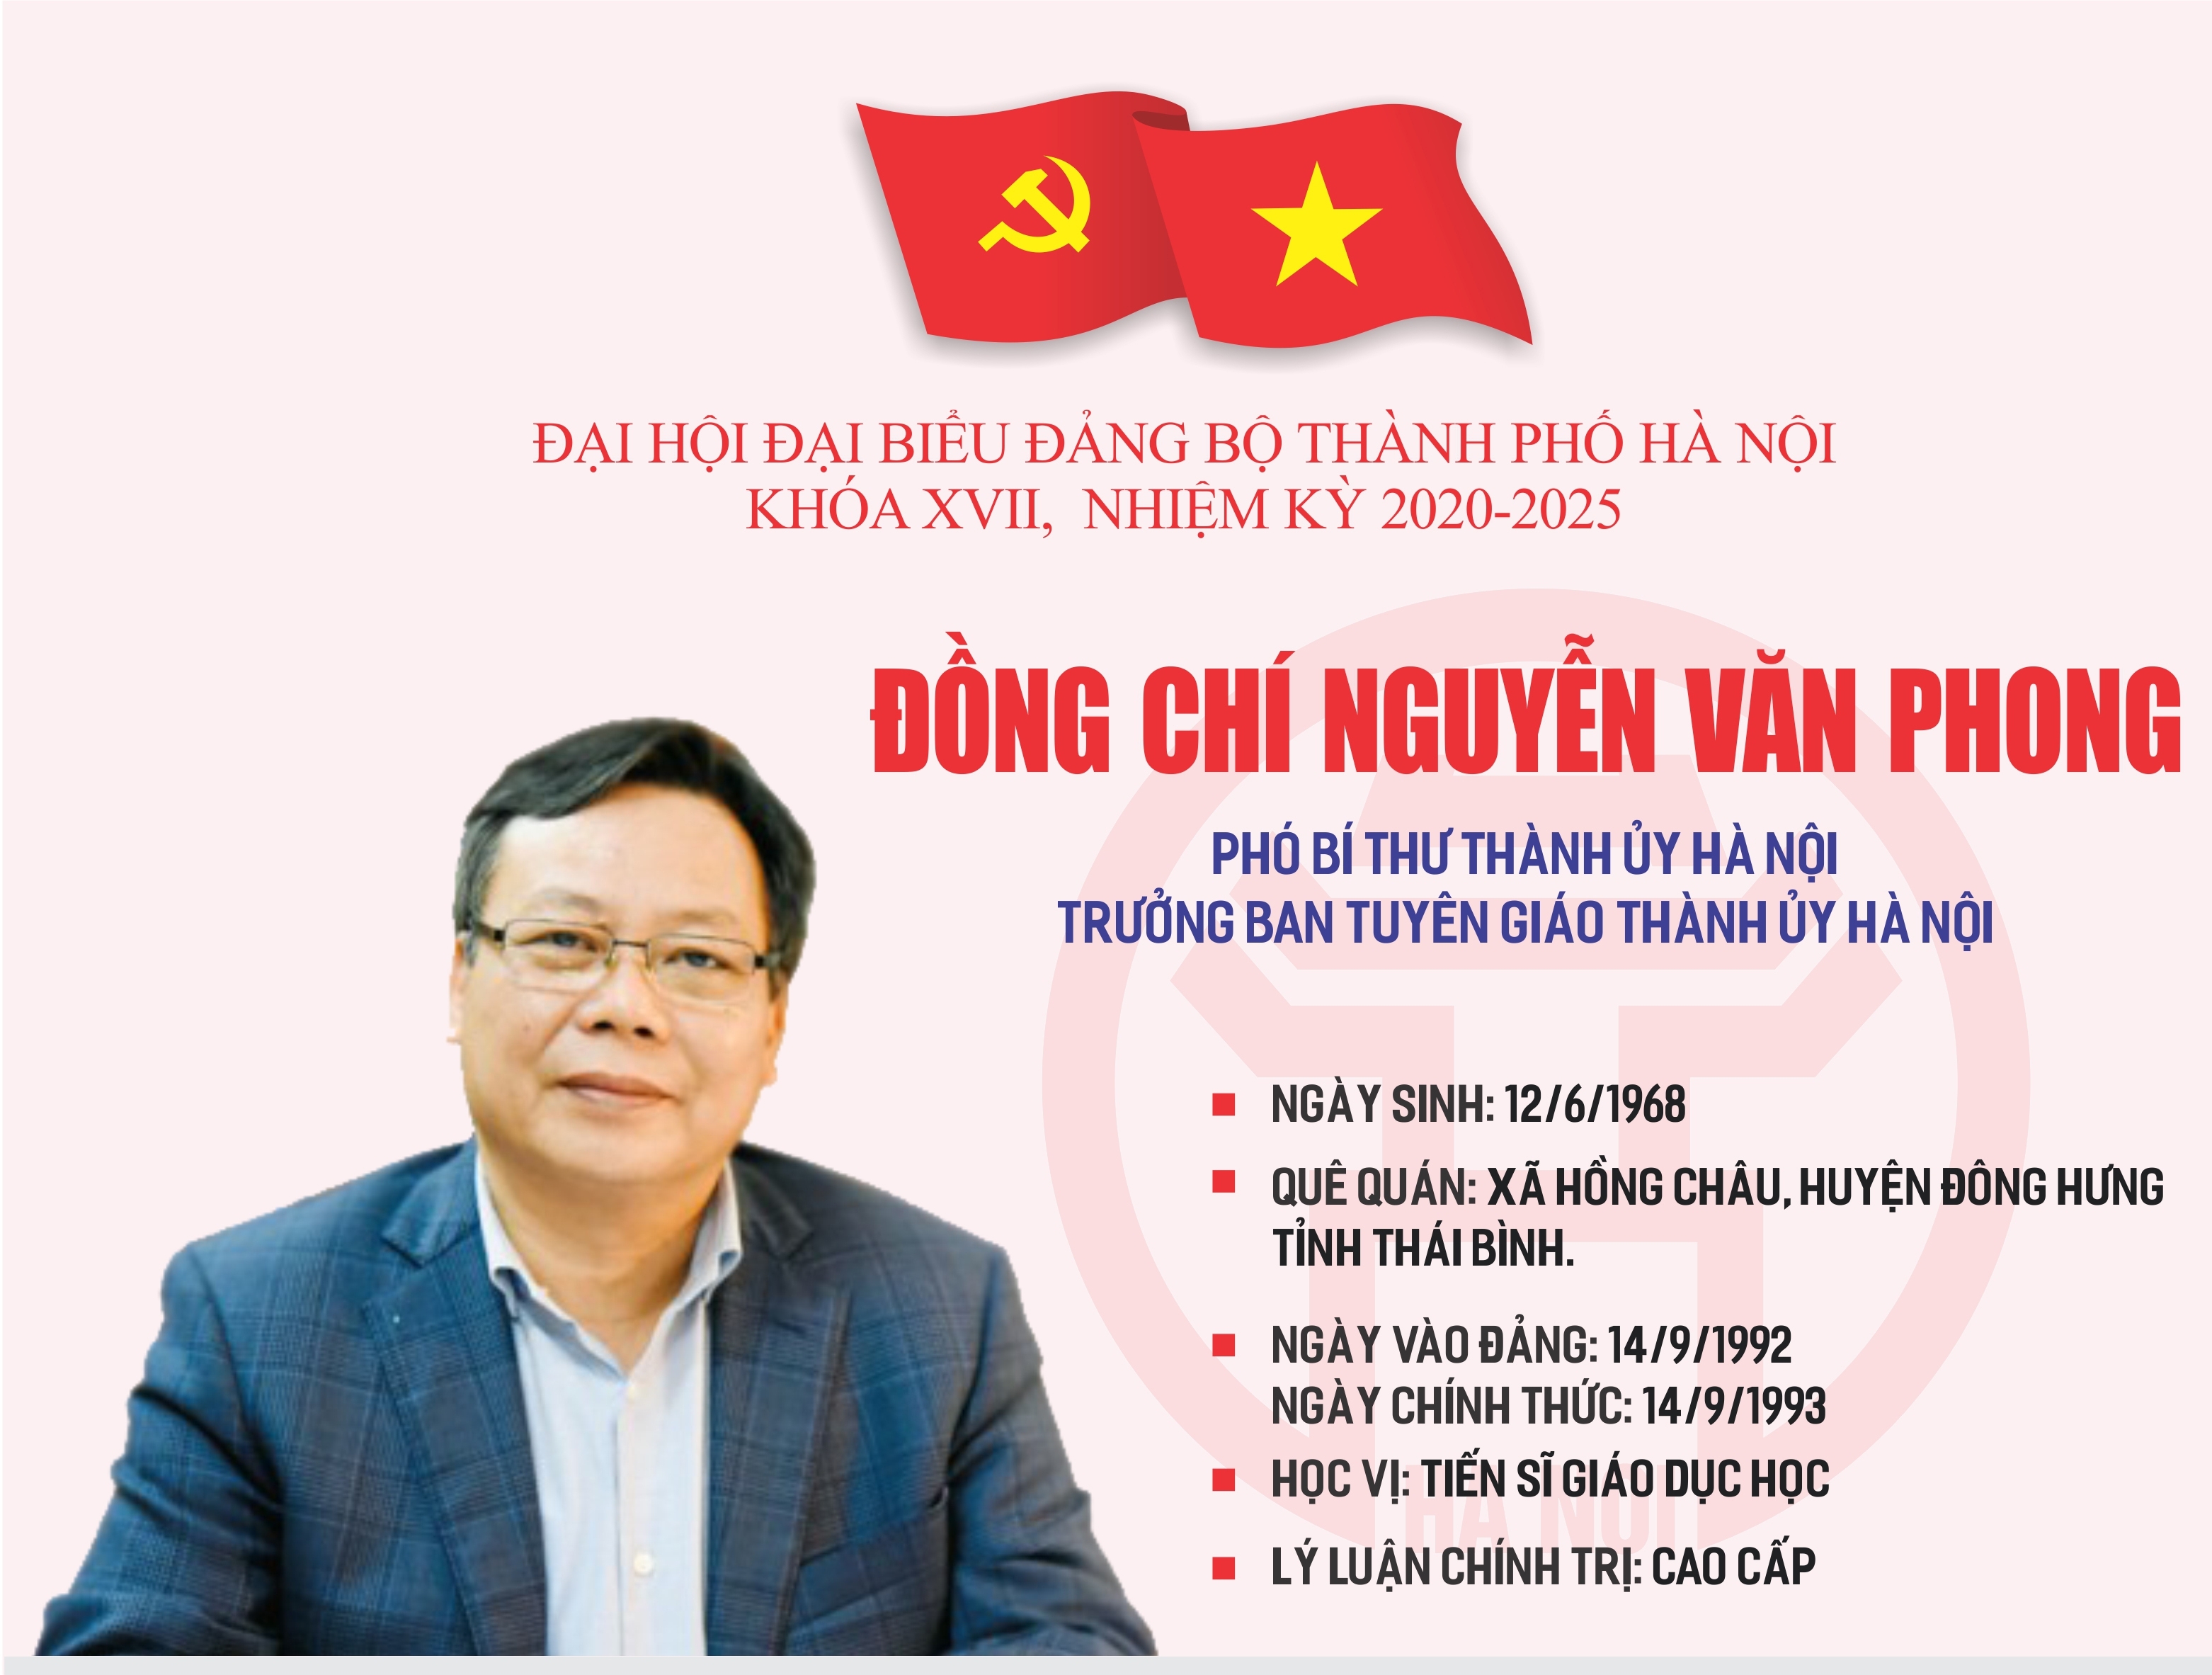 Infographic: Tóm tắt quá trình công tác của Phó Bí thư Thành ủy Hà Nội Nguyễn Văn Phong